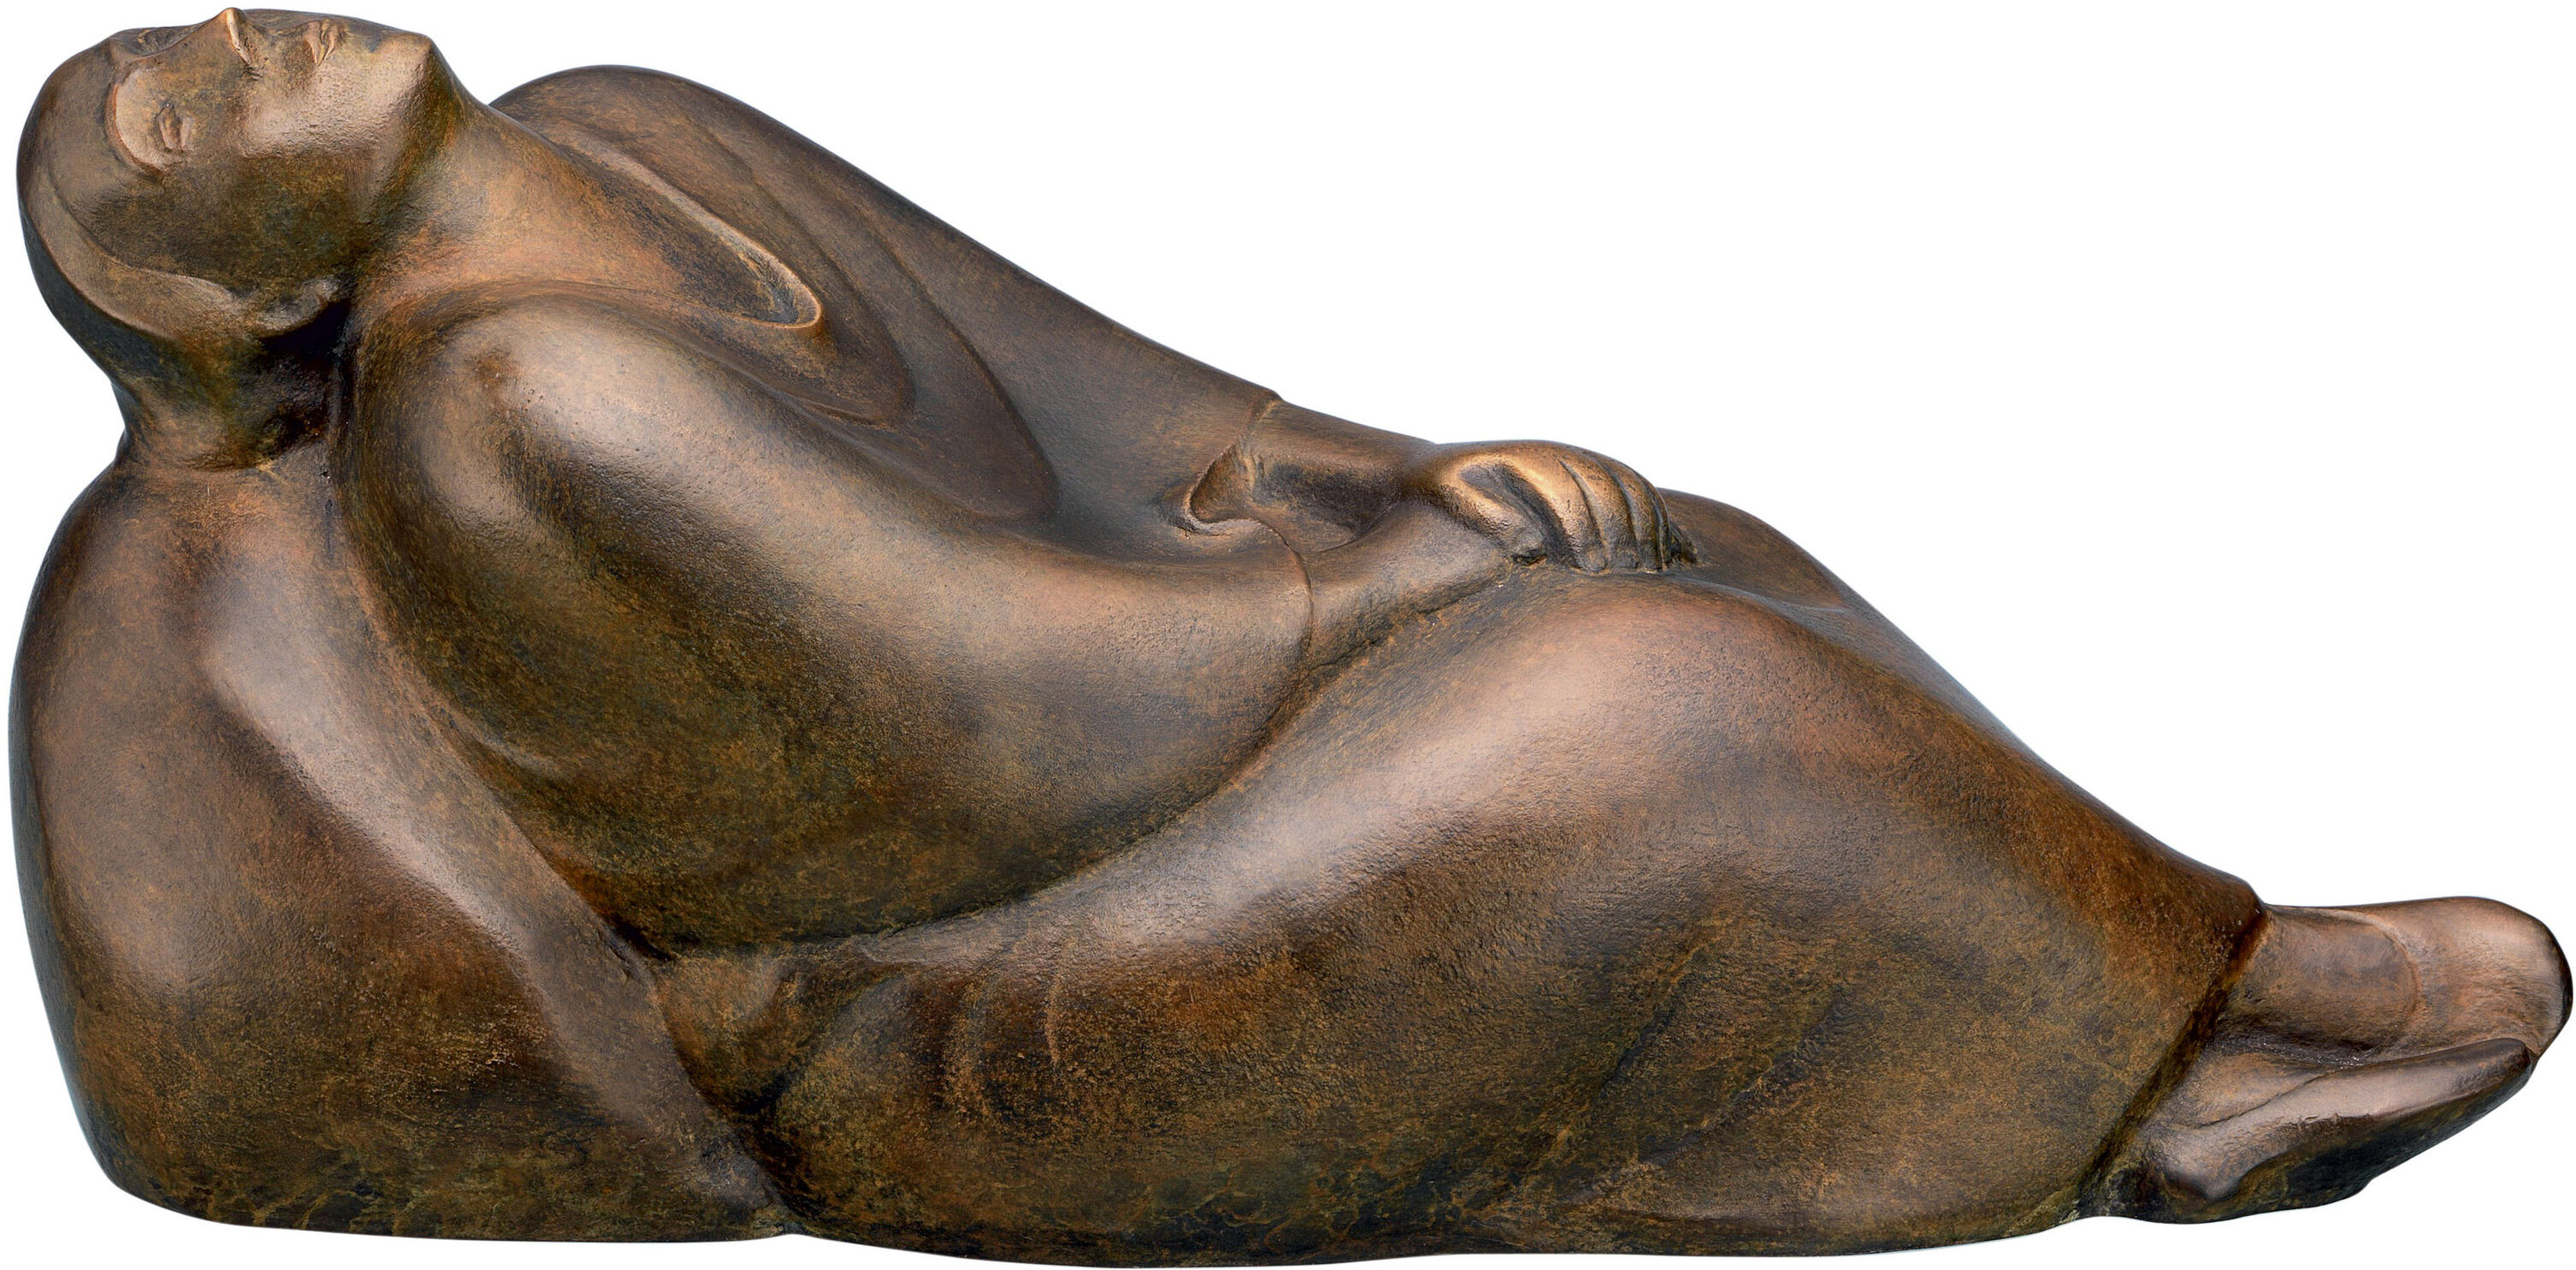 Sculptuur "Dromende vrouw" (1912), bronzen reductie von Ernst Barlach